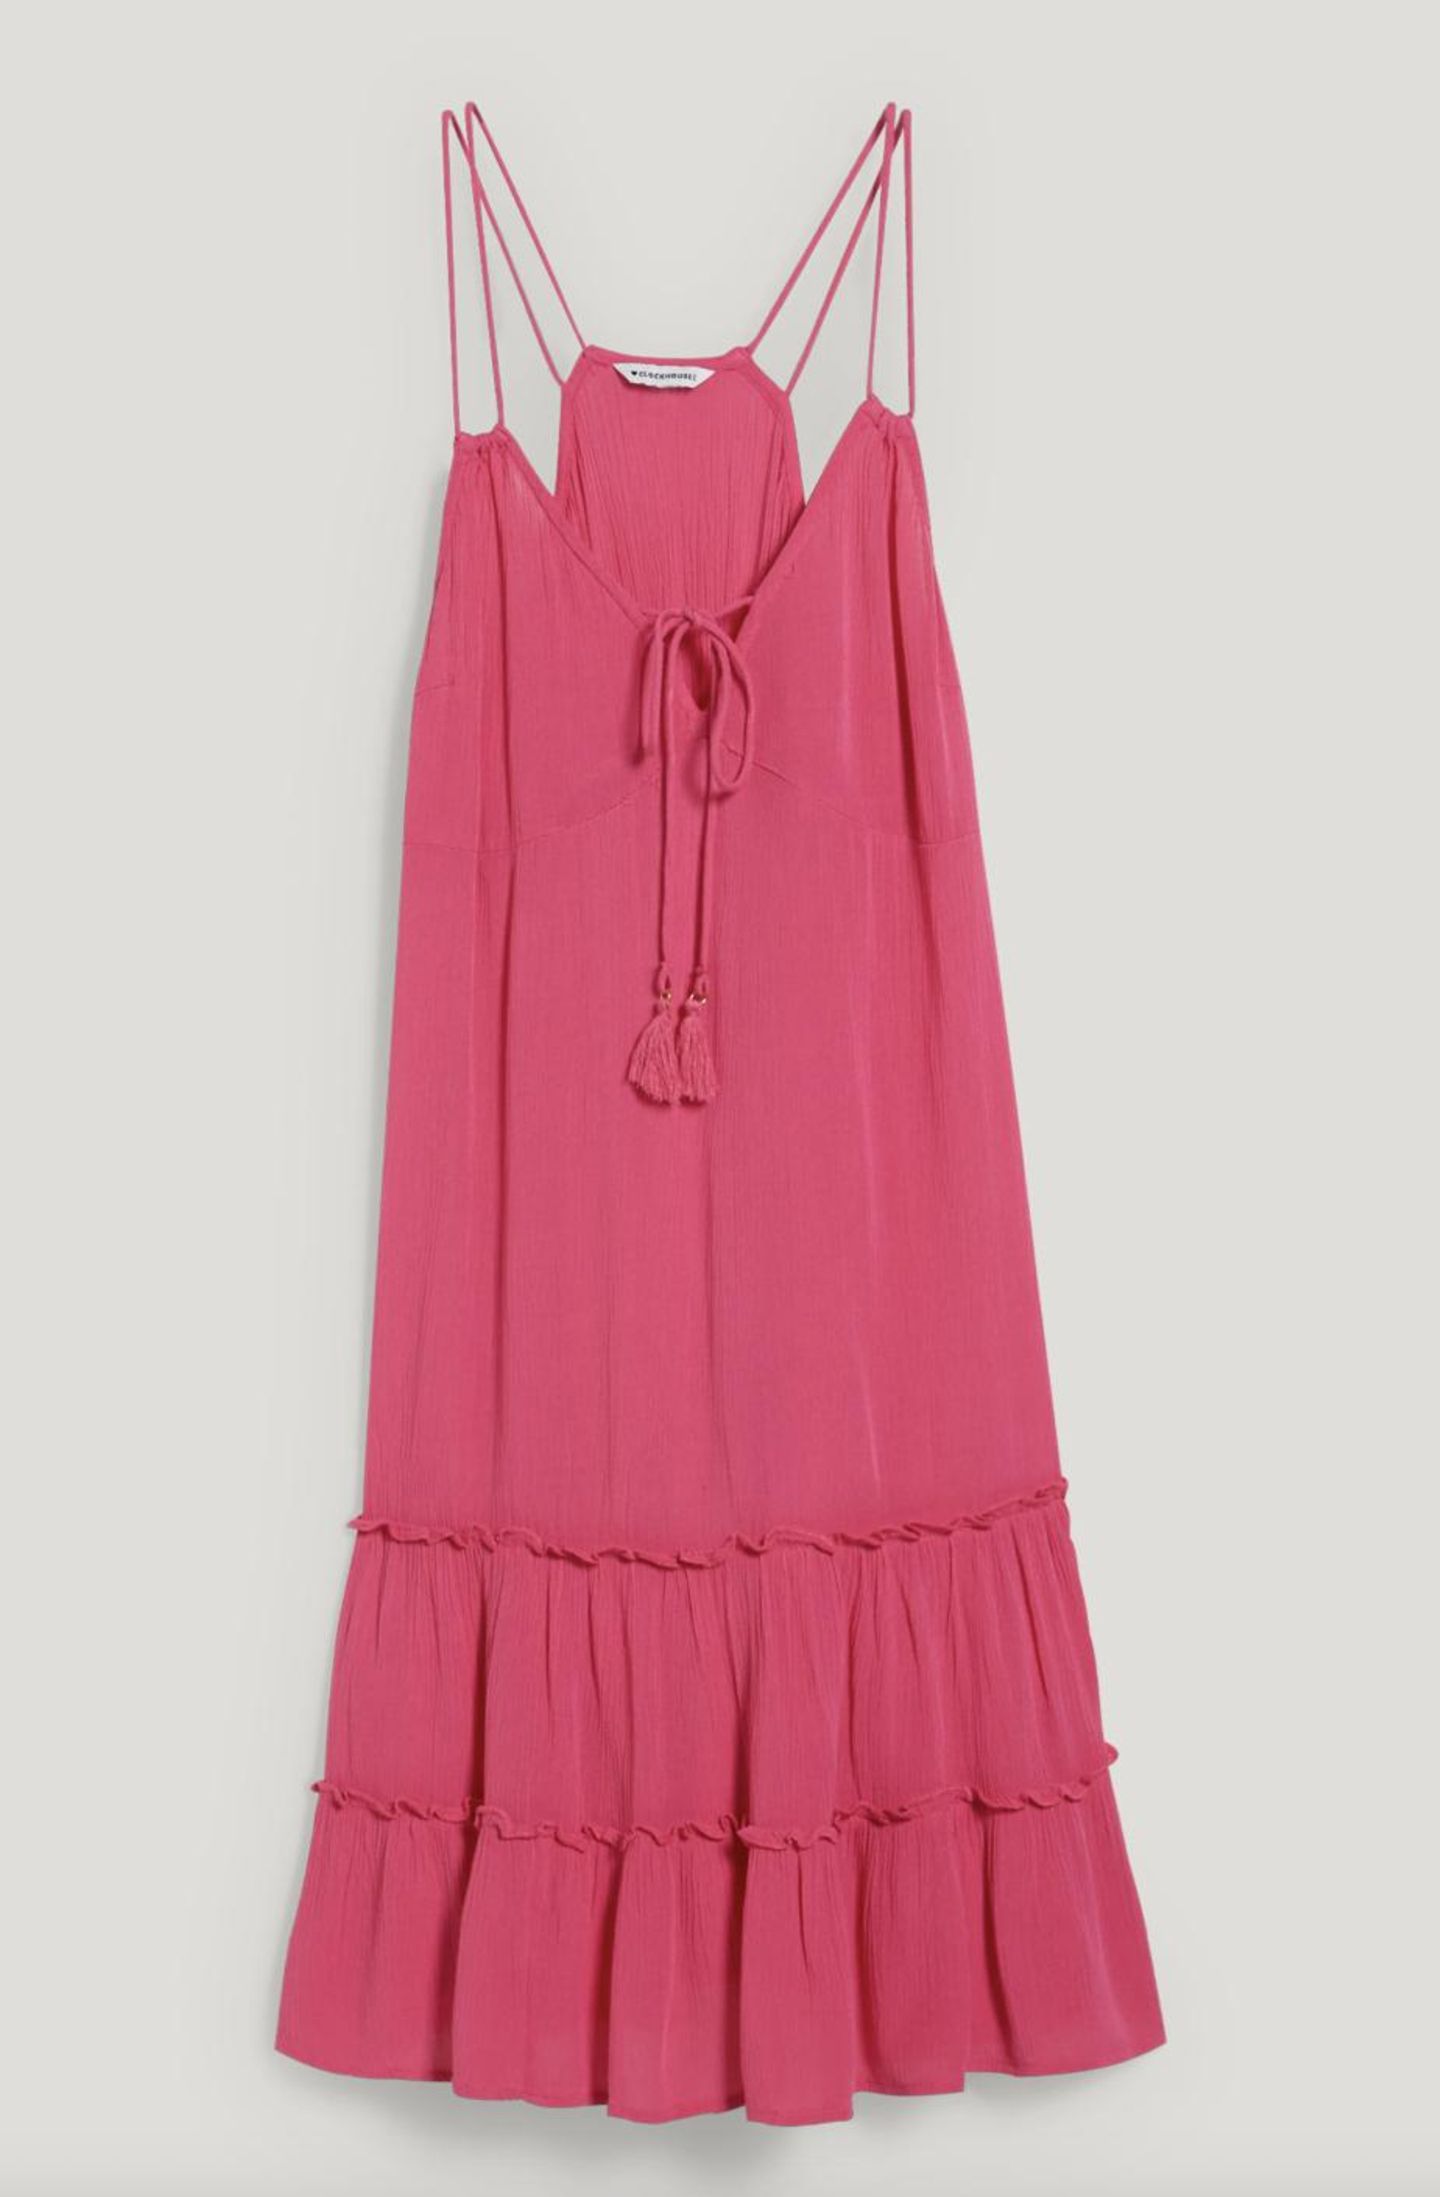 Mit Quasten, doppelten Spaghetti-Trägern und Rüschen-Borde ist dieses Kleid ein hübscher Blickfang für jeden Sommerurlaub. Von C&A, kostet ca. 20 Euro. 